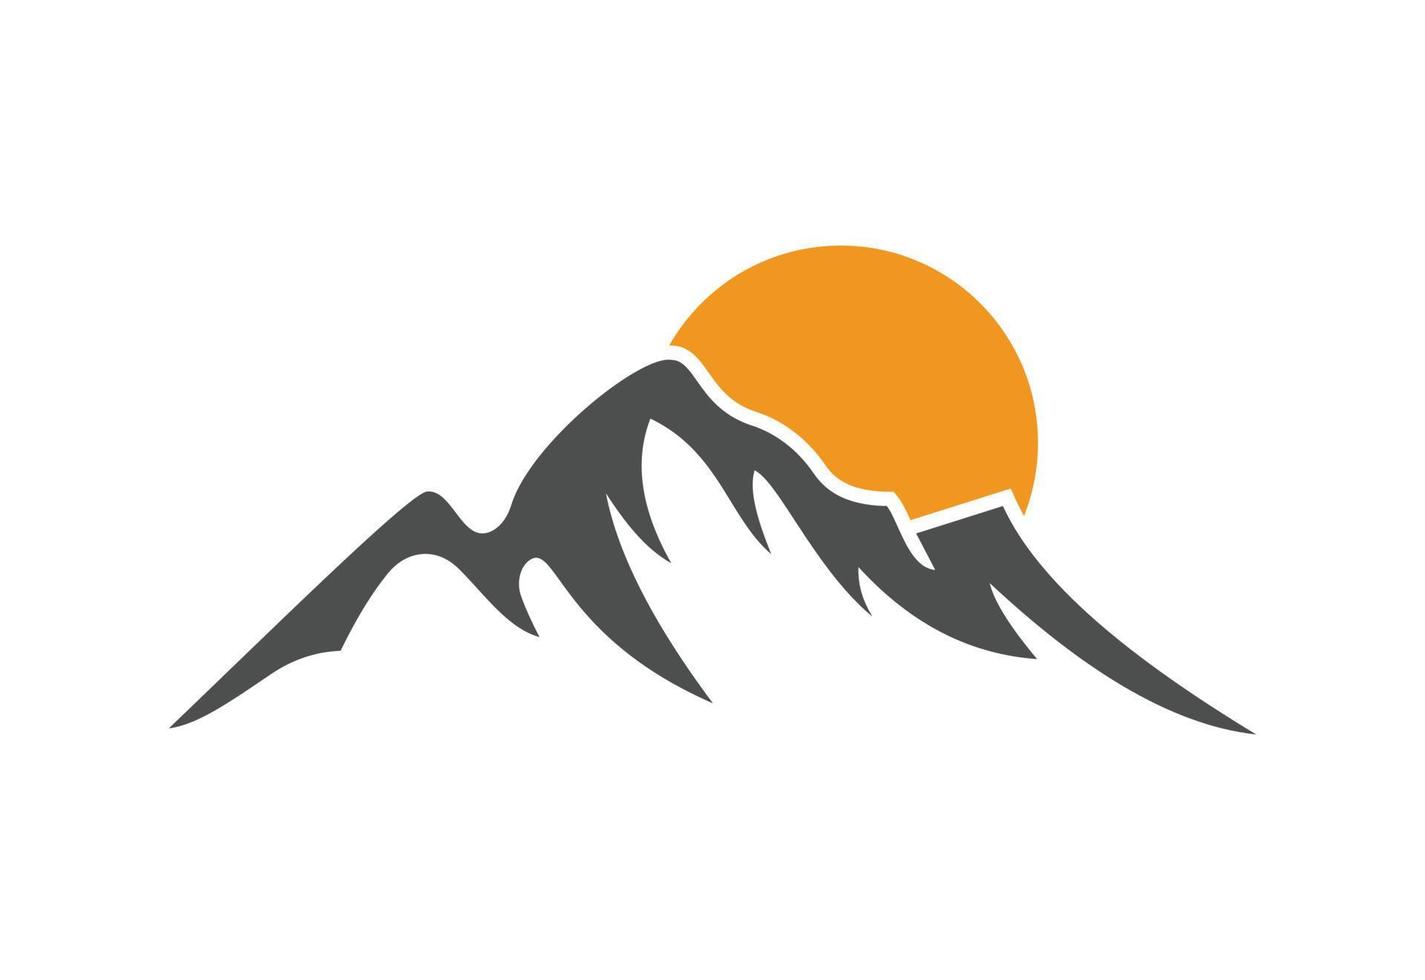 Berggipfel-Logo-Design, Vektorillustration vektor